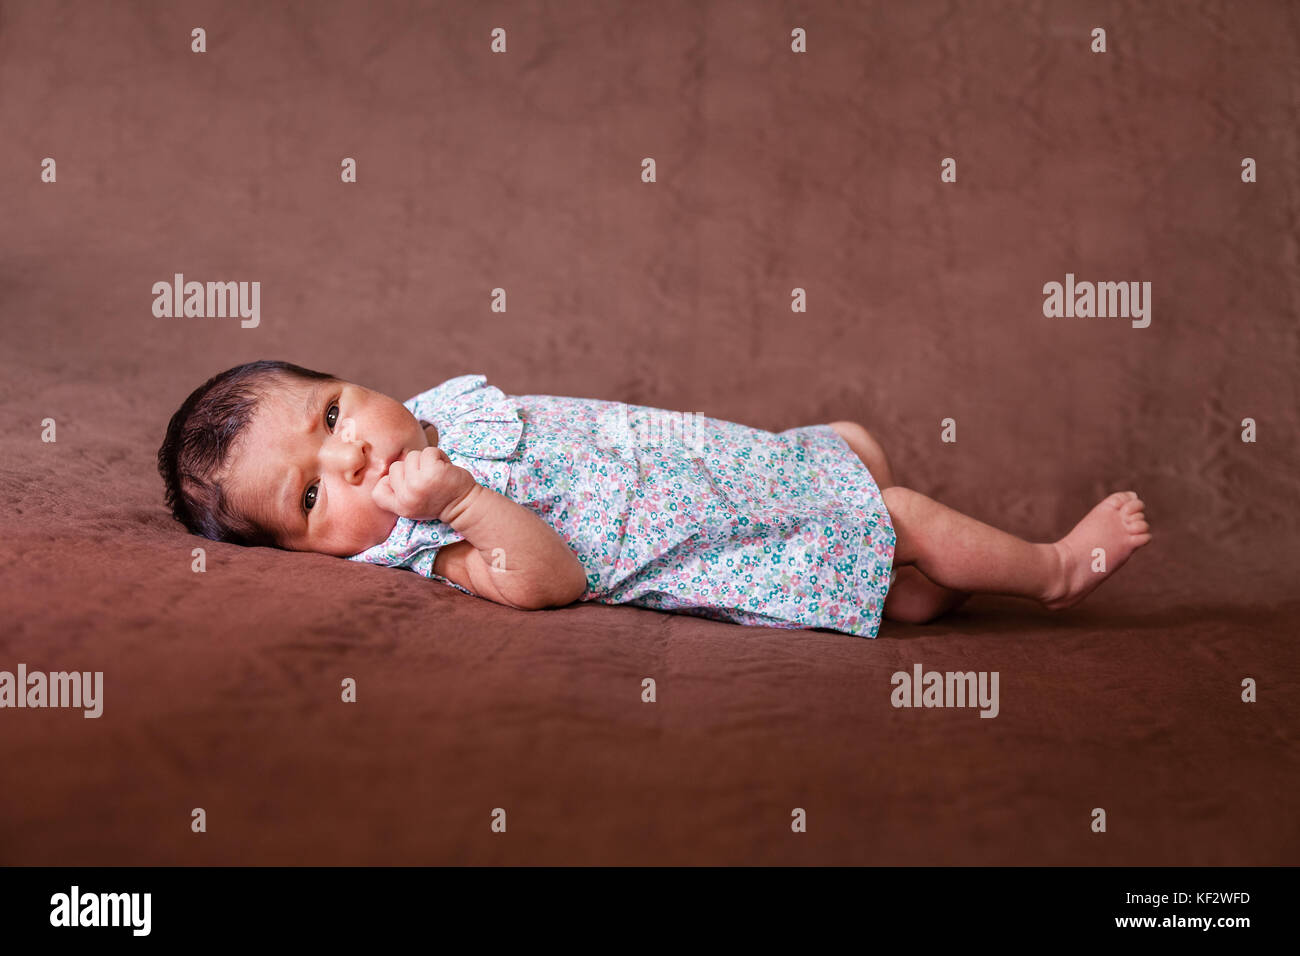 Cute deux semaines Naissance bebe Fille allongée, les yeux ouverts et à la recherche autour de porter une robe florale / Naissance bebe Fille couché lit enfant yeux Banque D'Images